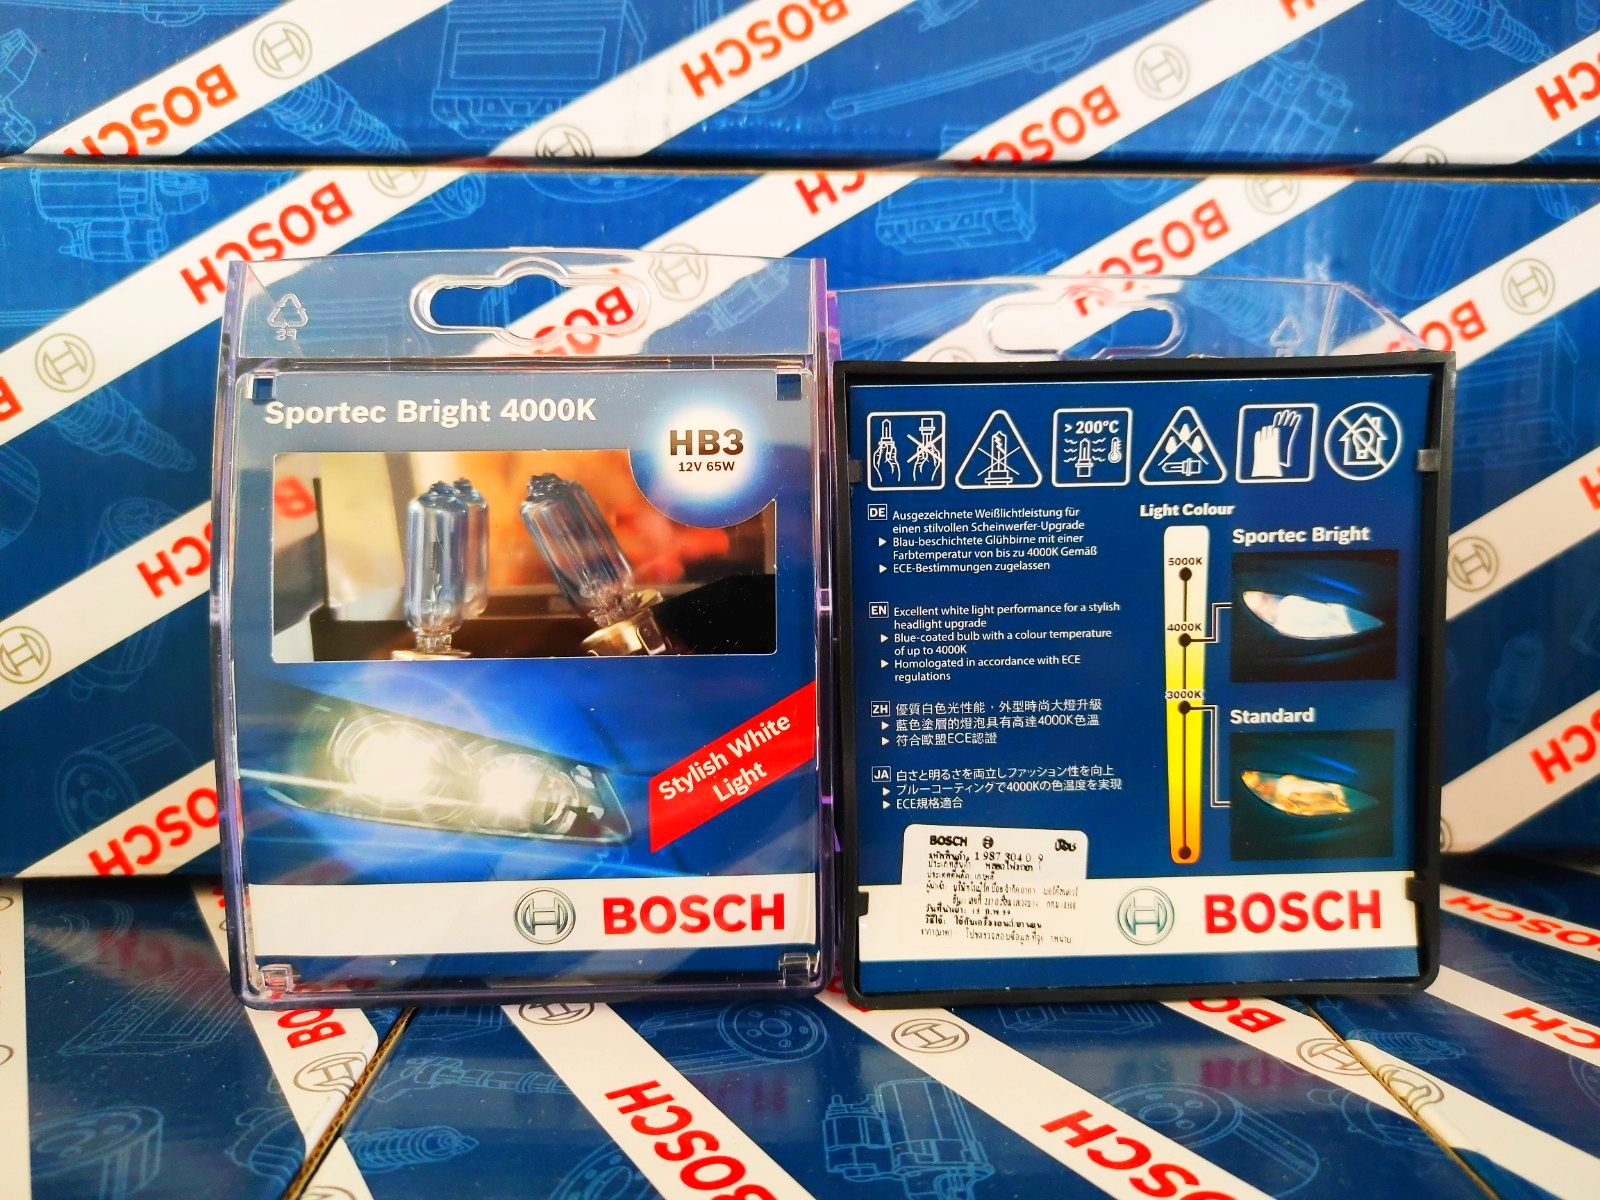 Bóng Đèn Tăng Sáng Bosch 9005 (HB3) 12V 65W Sportec Bright 4000K (Hộp 2 Bóng)